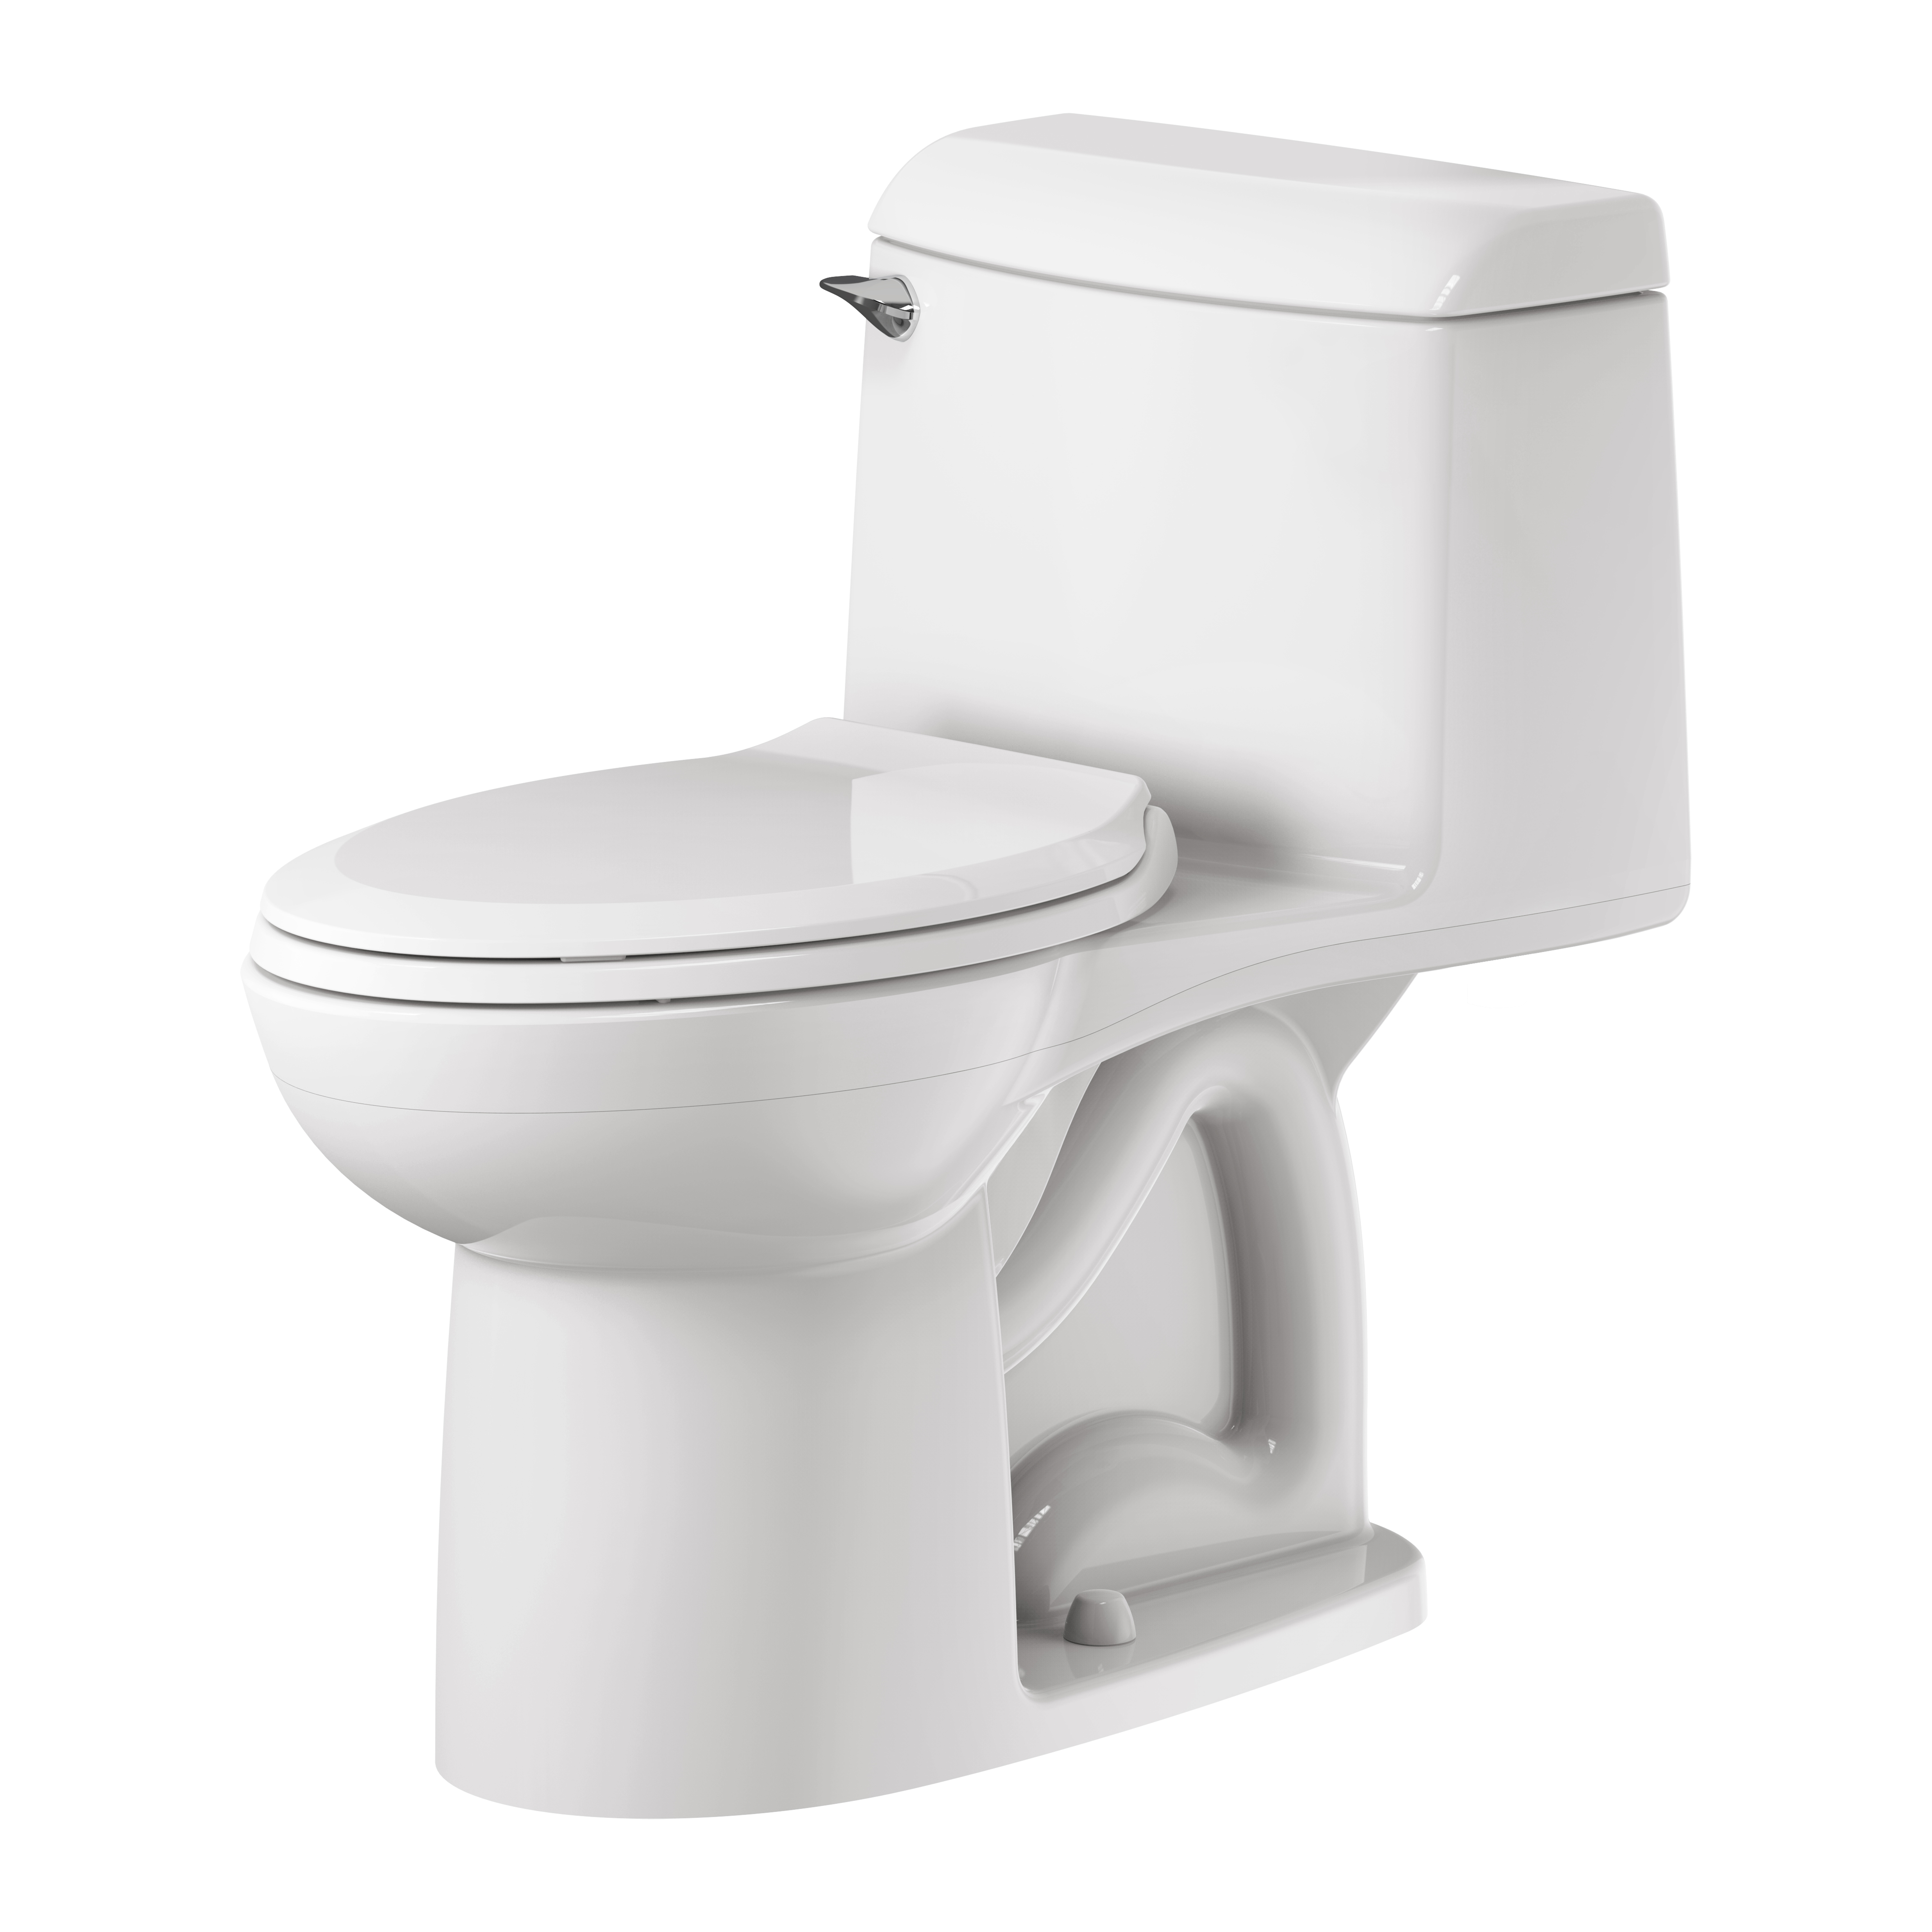 Toilette monopièce Champion 4, 1,6 gpc/6,0 lpc, à cuvette allongée à hauteur standard avec siège